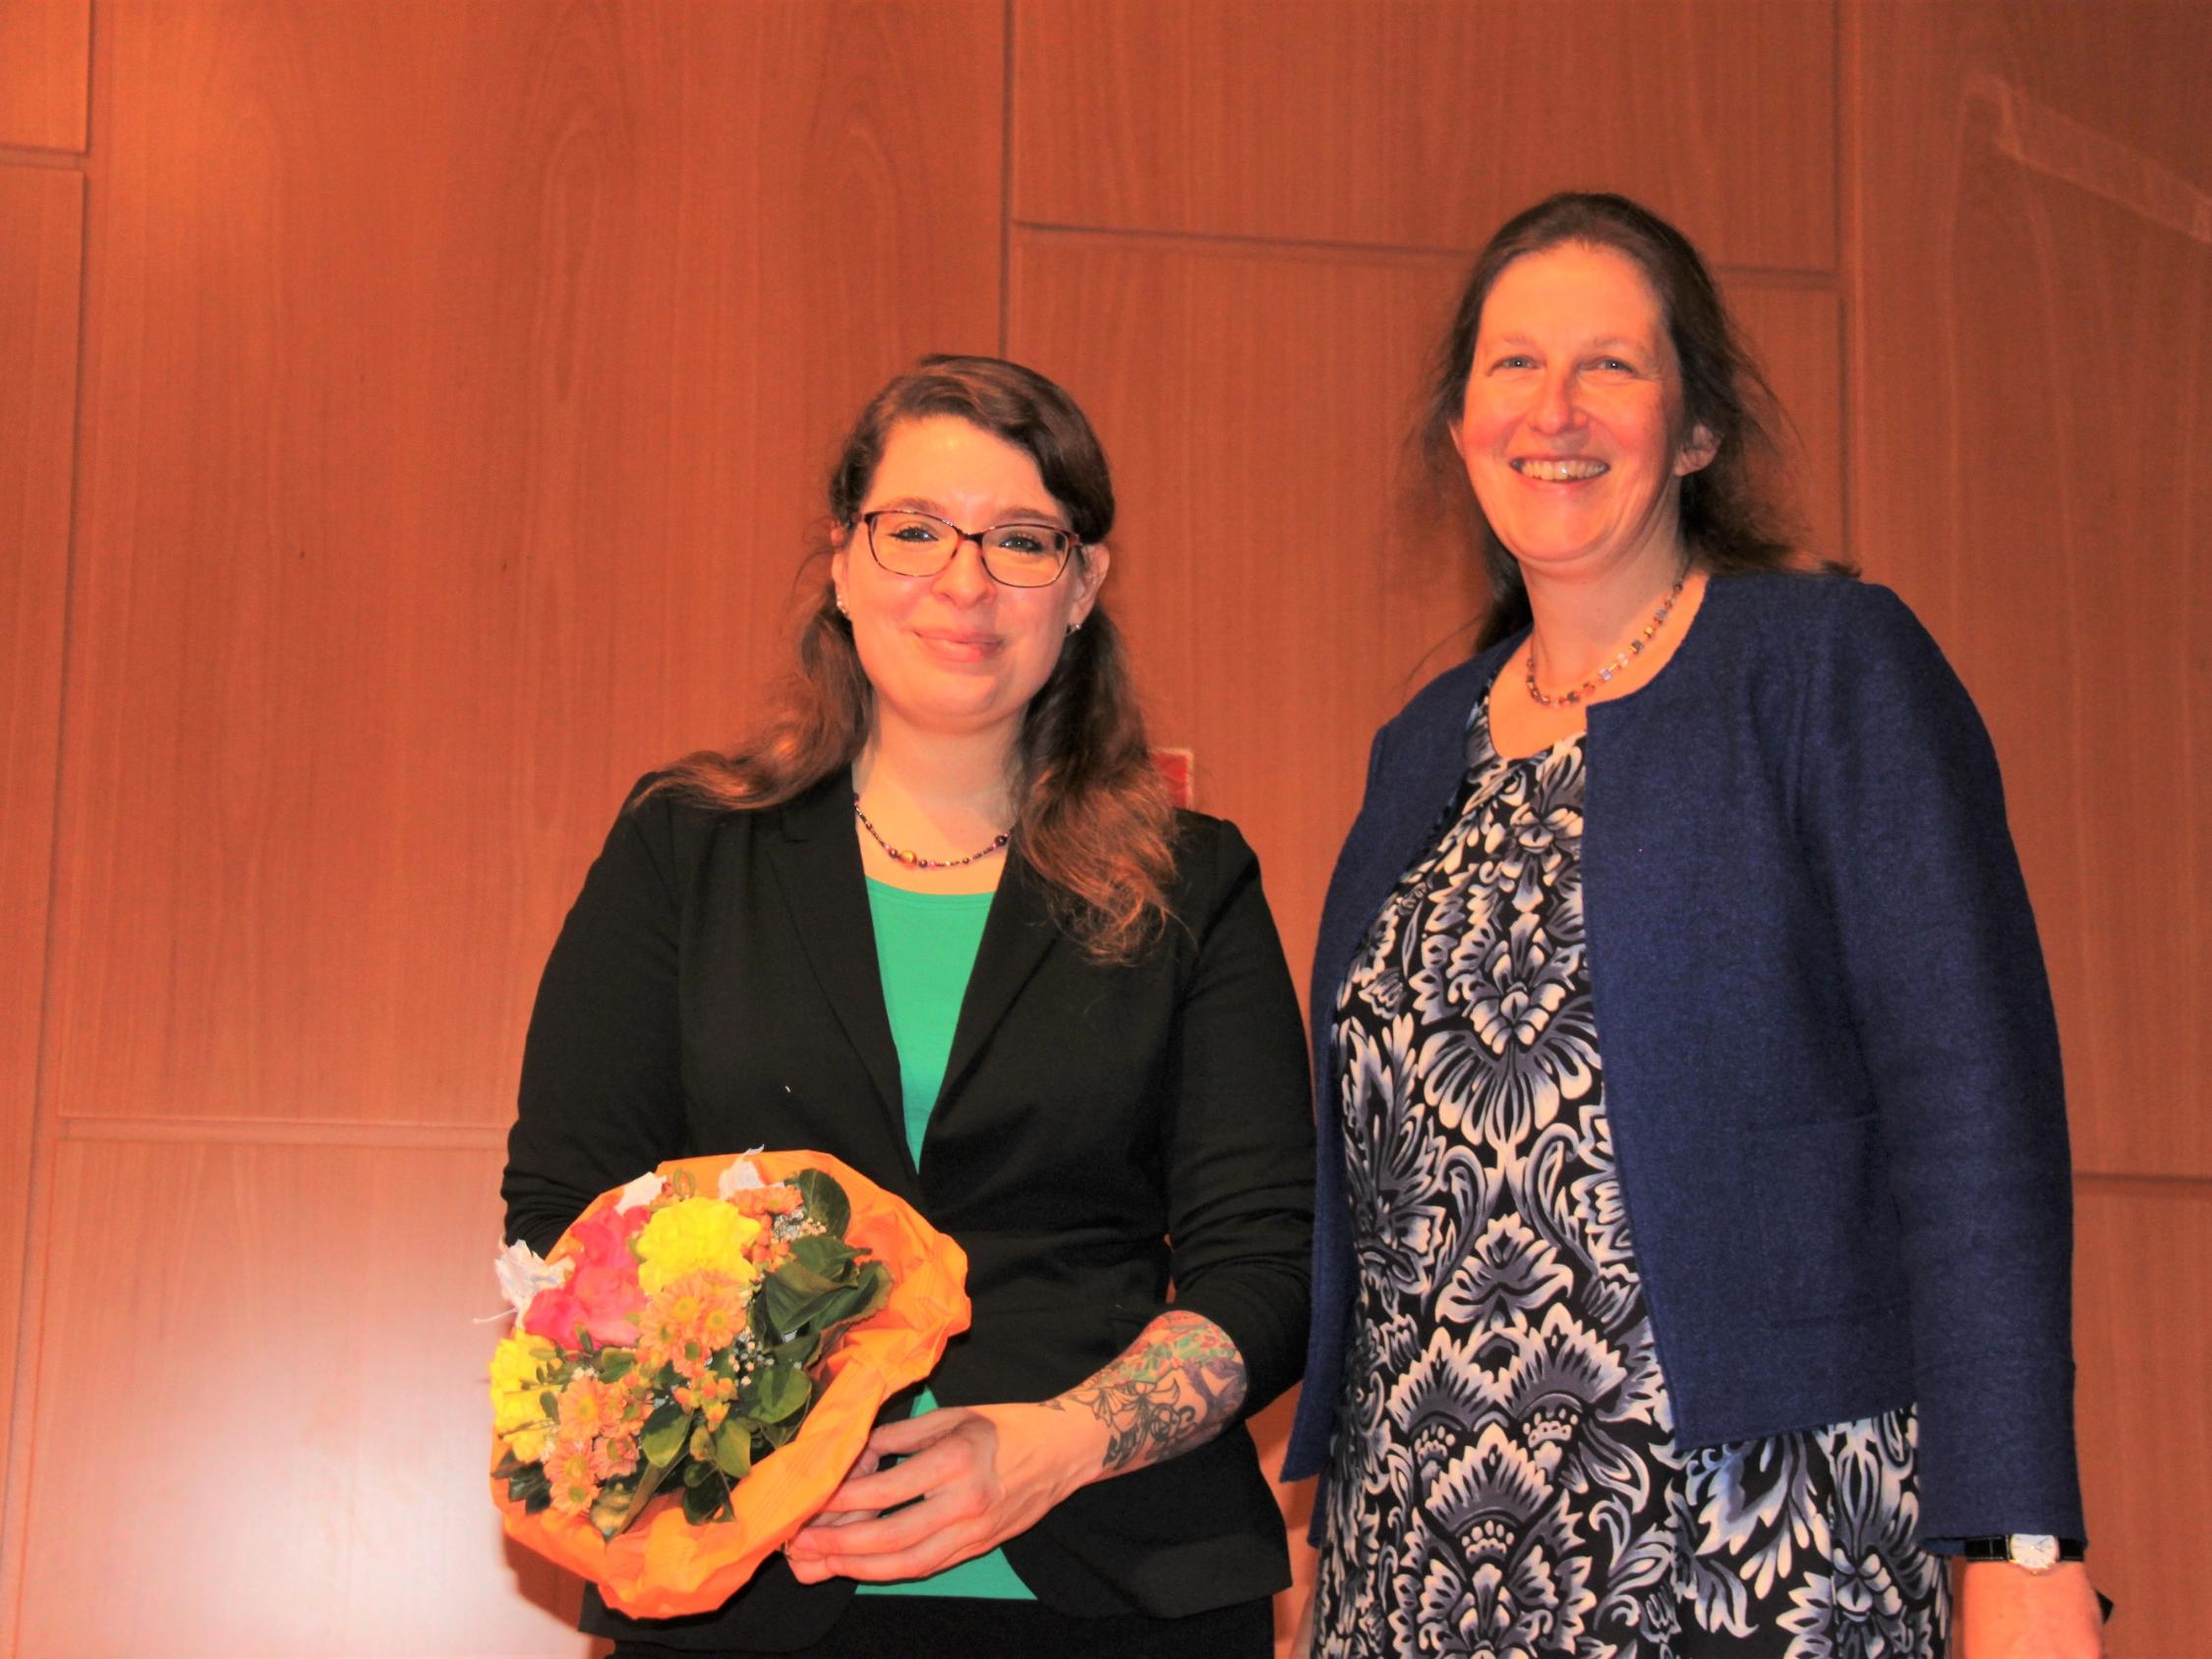 Andrea Honecker (r.), Vorsitzende der KED in NRW, dankte Prof. i.V. Dr. Laura Flöter-Fratesi (l.) für ihren Vortrag beim KED Elternforum im Museum Folkwang mit einem Blumenstrauß.